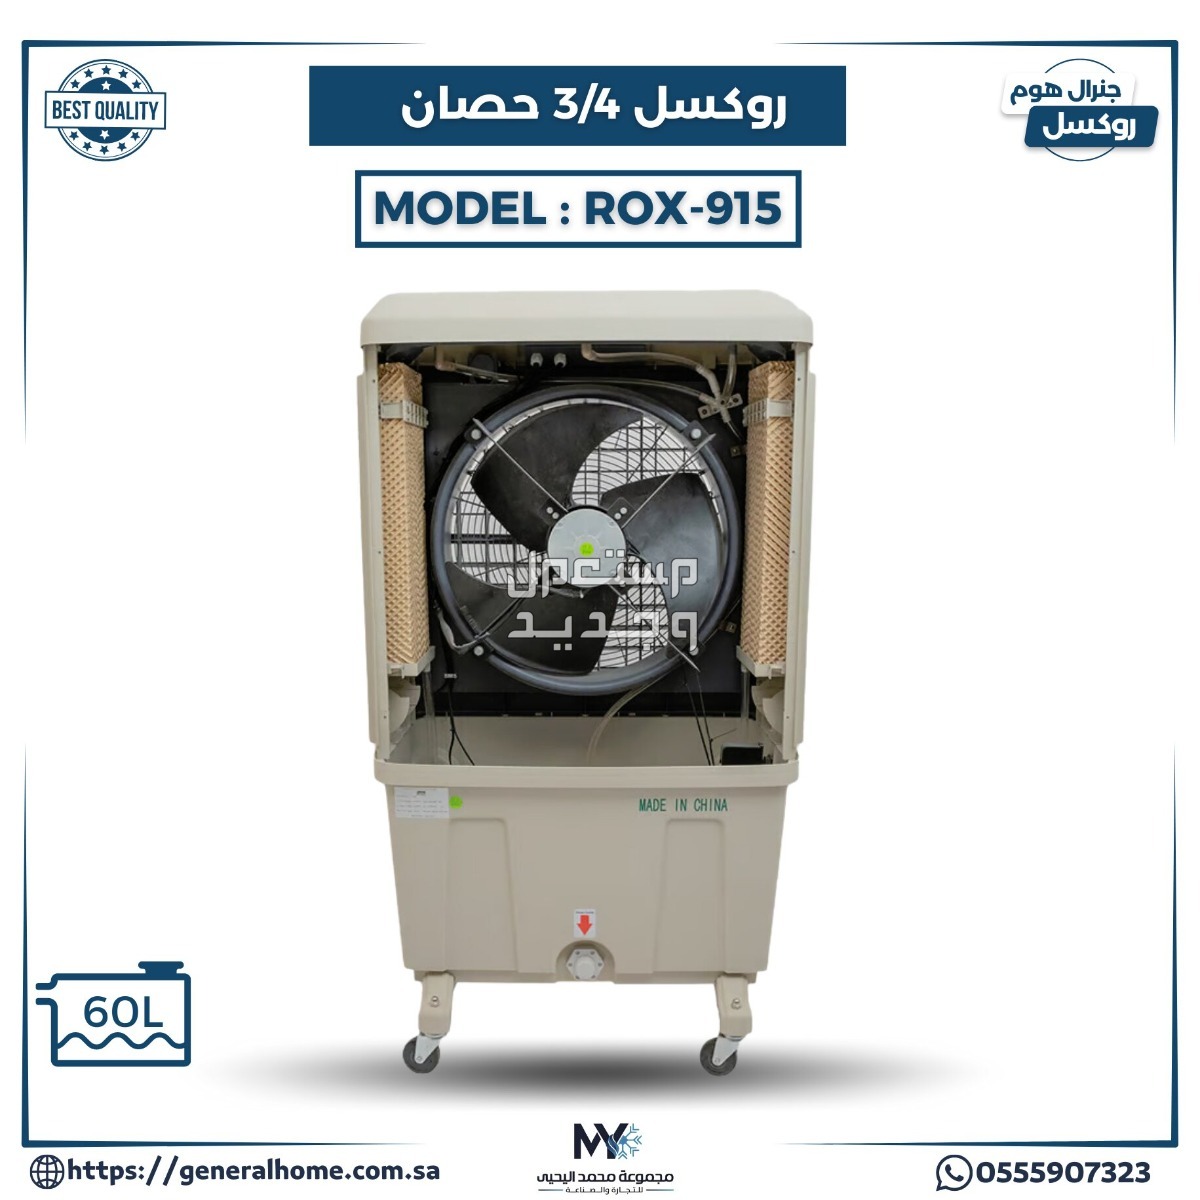 عروض اليحيى للمكيفات بالأنواع والمواصفات والصور والأسعار في ليبيا مكيف روكسل 3/4 حصان موديل ROX-915